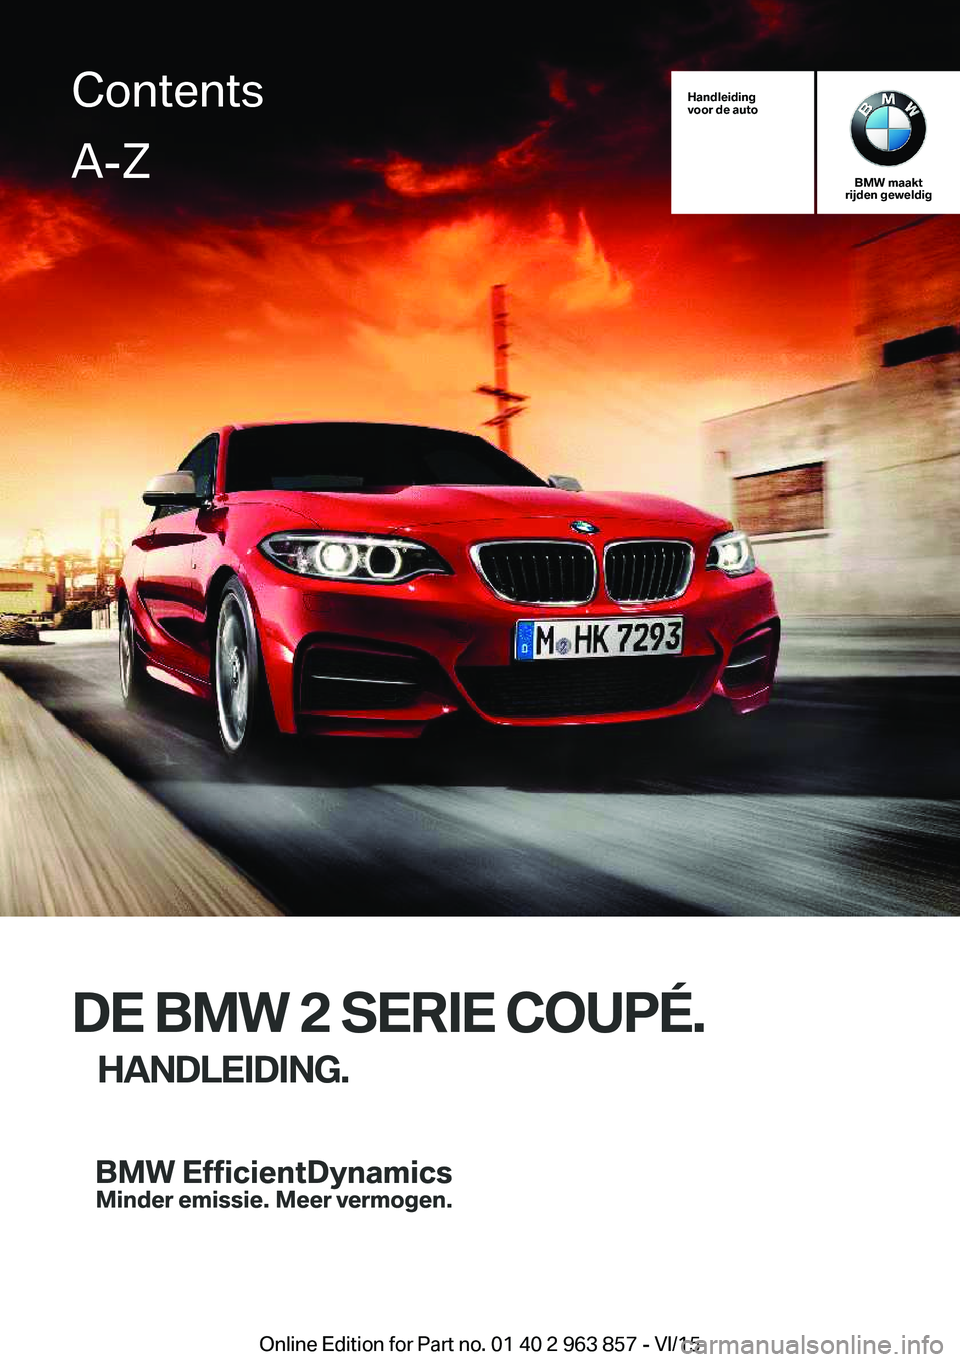 BMW 2 SERIES COUPE 2016  Instructieboekjes (in Dutch) Handleiding
voor de auto
BMW maakt
rijden geweldig
DE BMW 2 SERIE COUPÉ.
HANDLEIDING.
ContentsA-Z
Online Edition for Part no. 01 40 2 963 857 - VI/15   